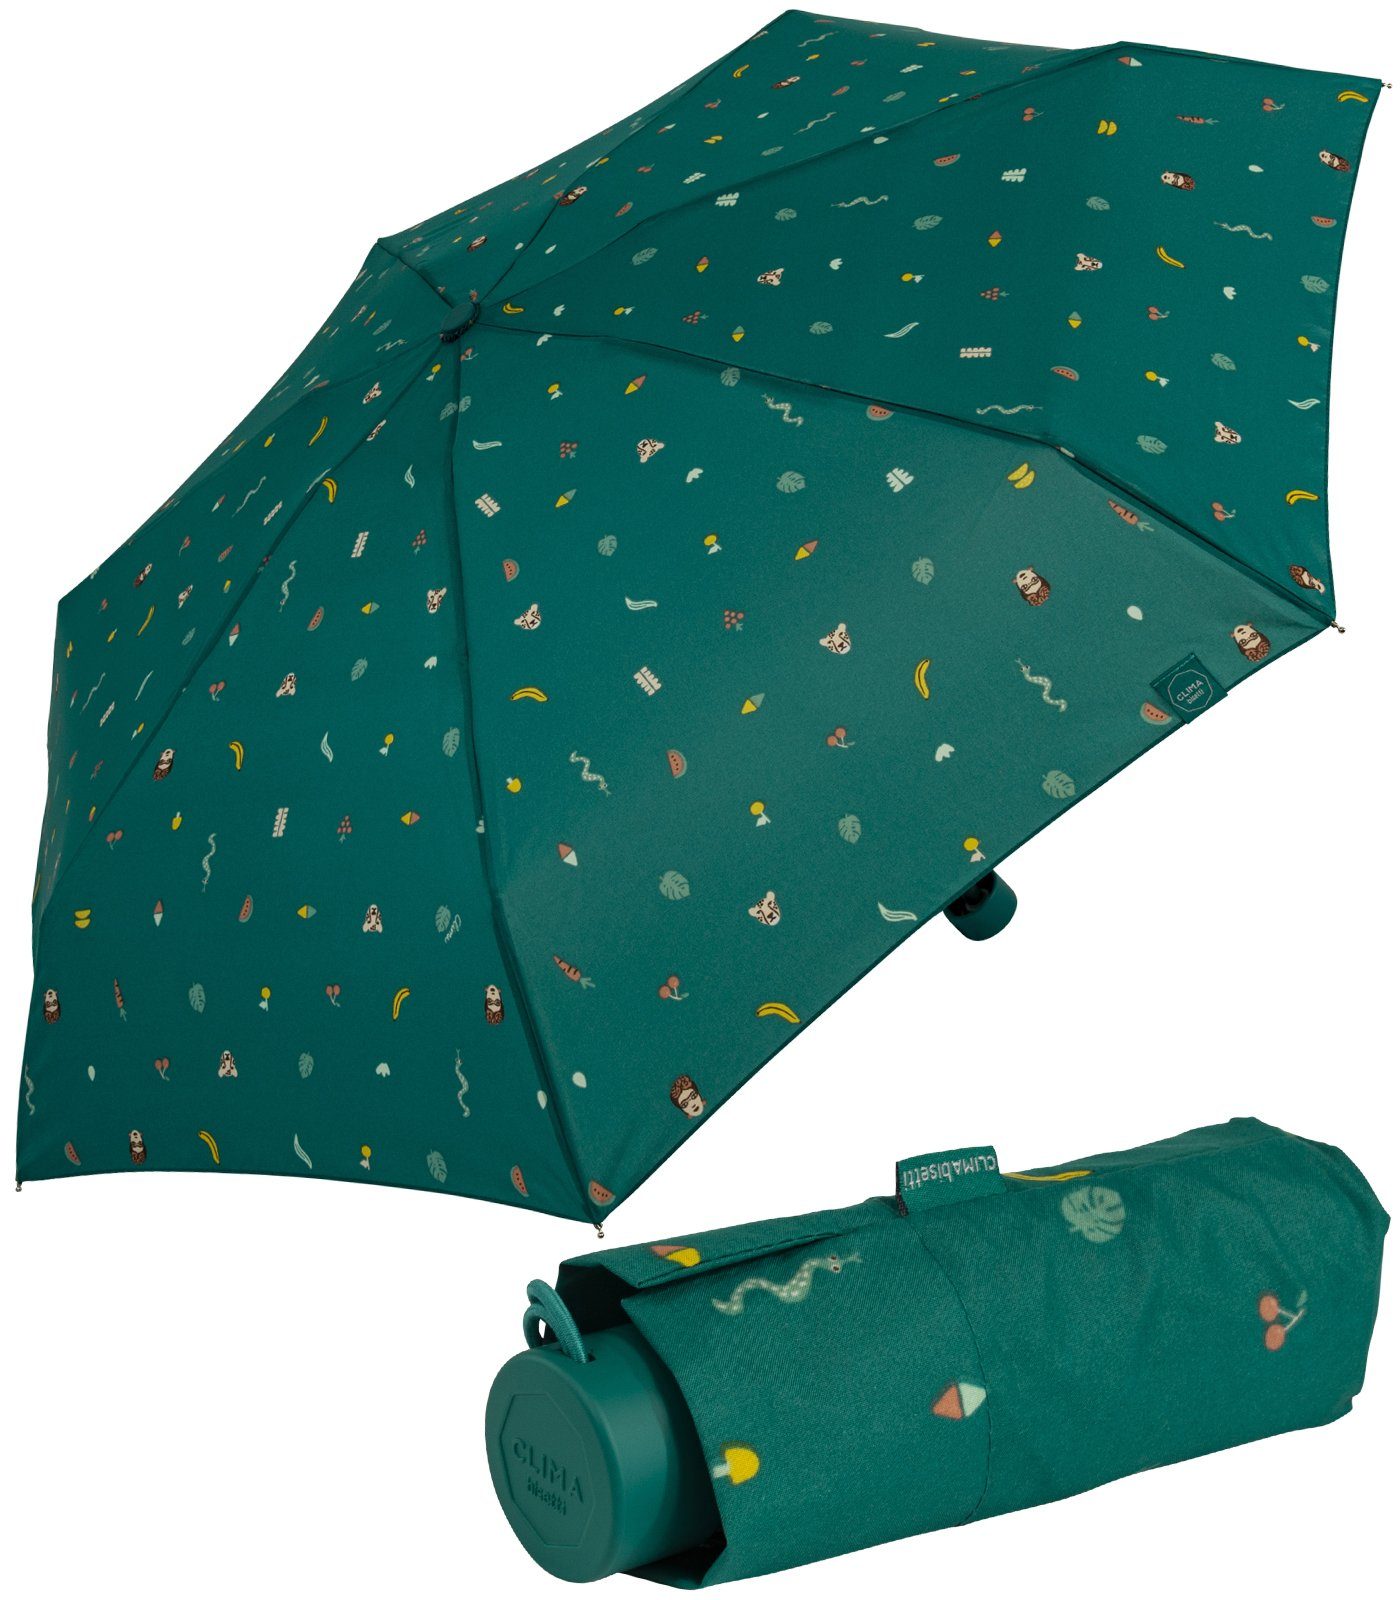 bisetti Taschenregenschirm Damen-Regenschirm, klein, stabil, kompakt, mit Handöffner, farbenfroh mit Tropen-Dschungel-Motiven - türkis